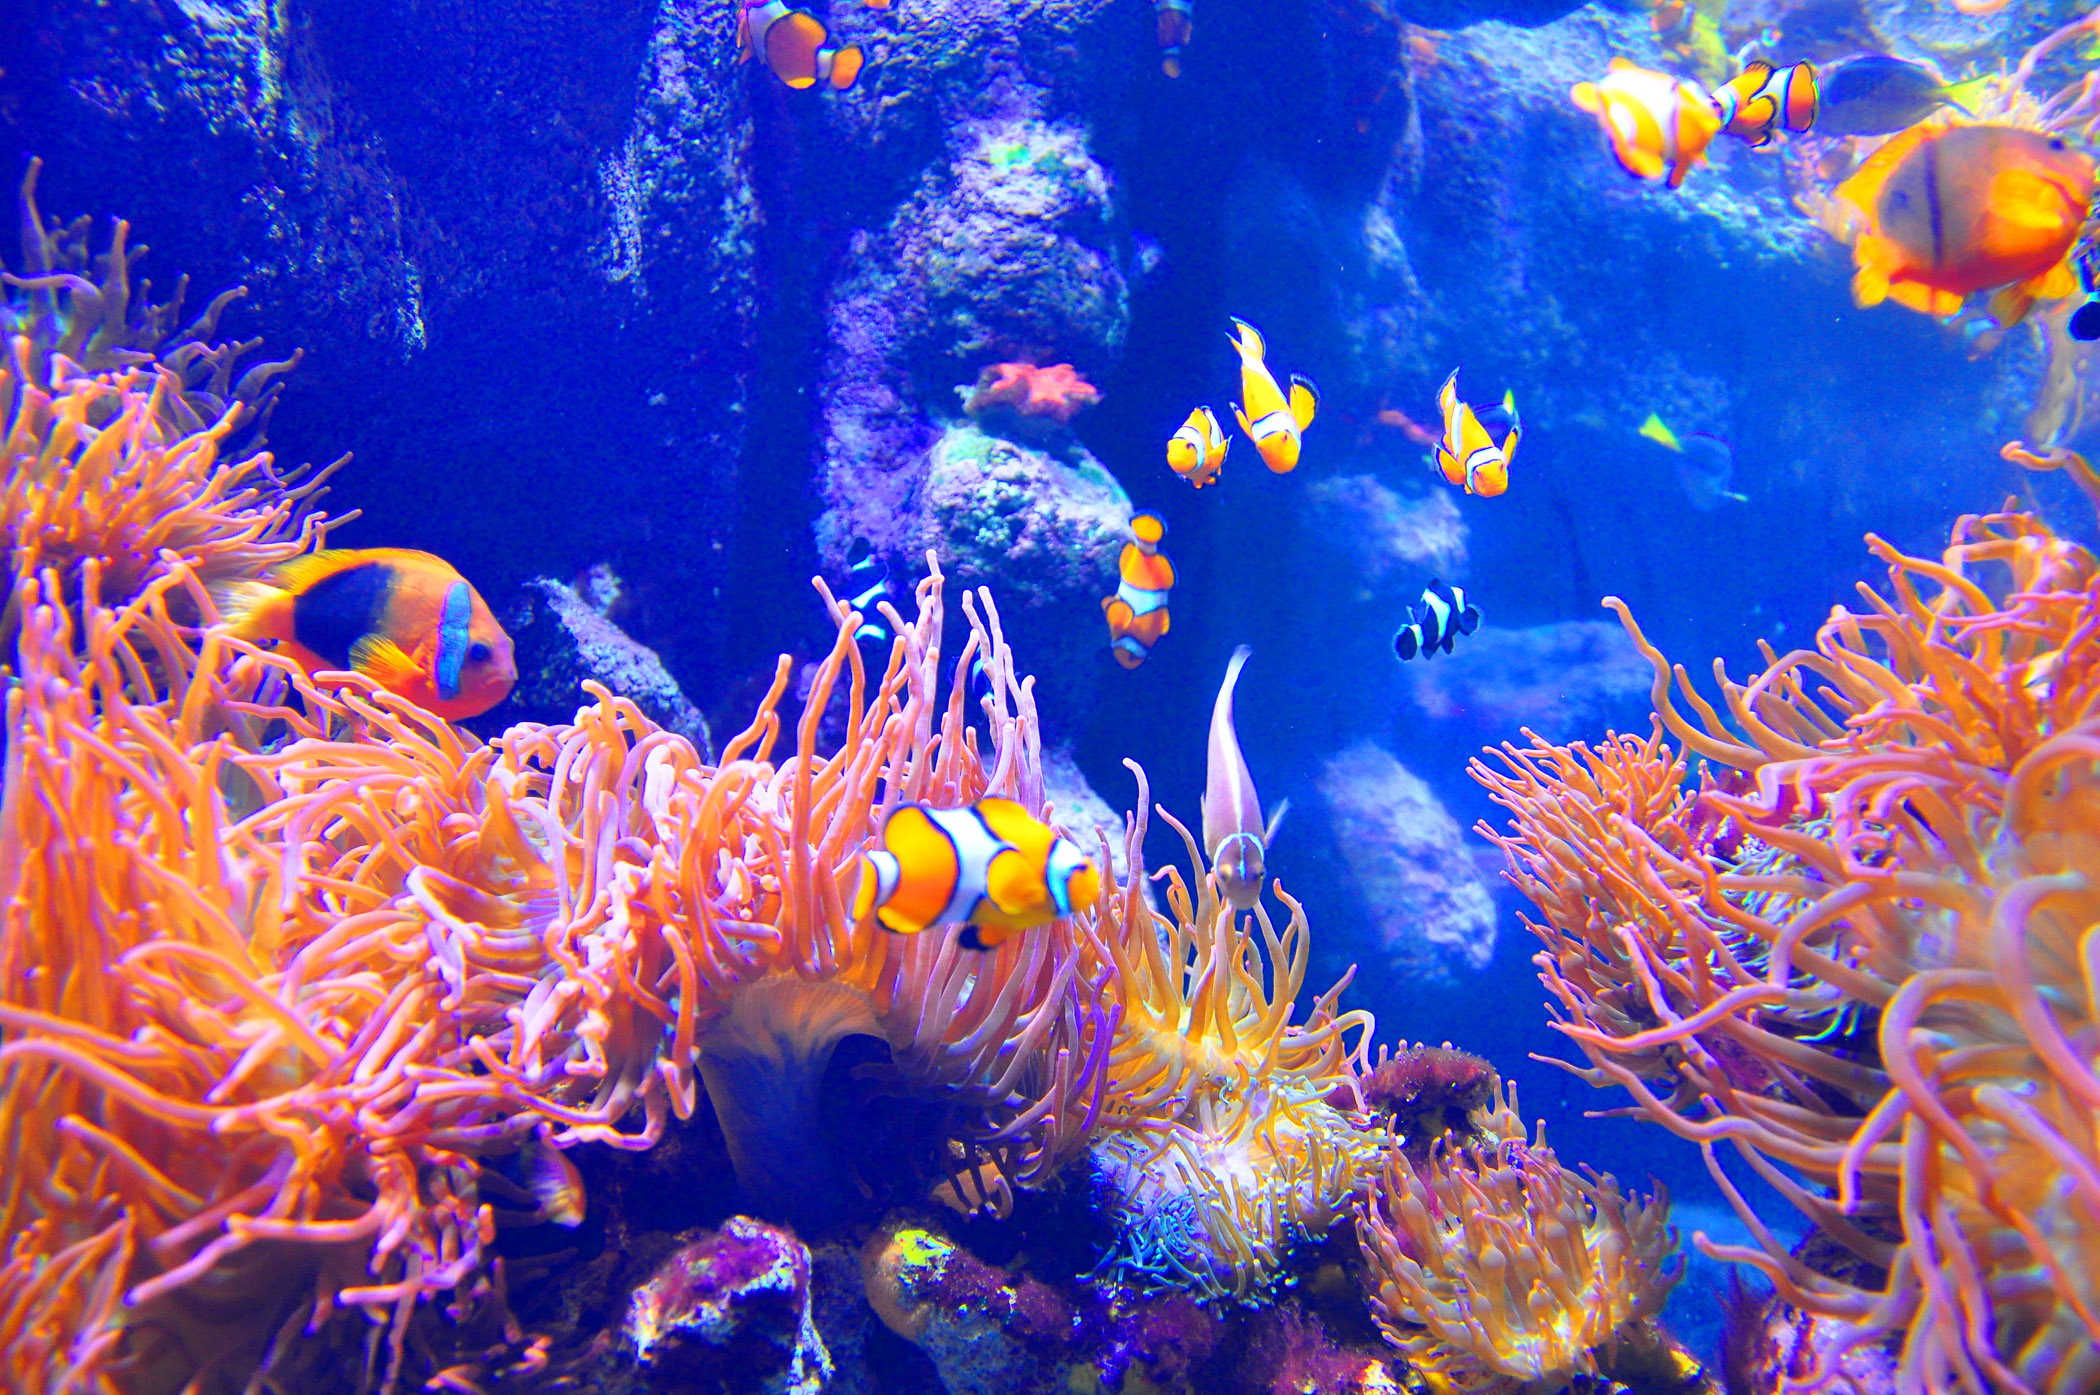 6. Aquarium